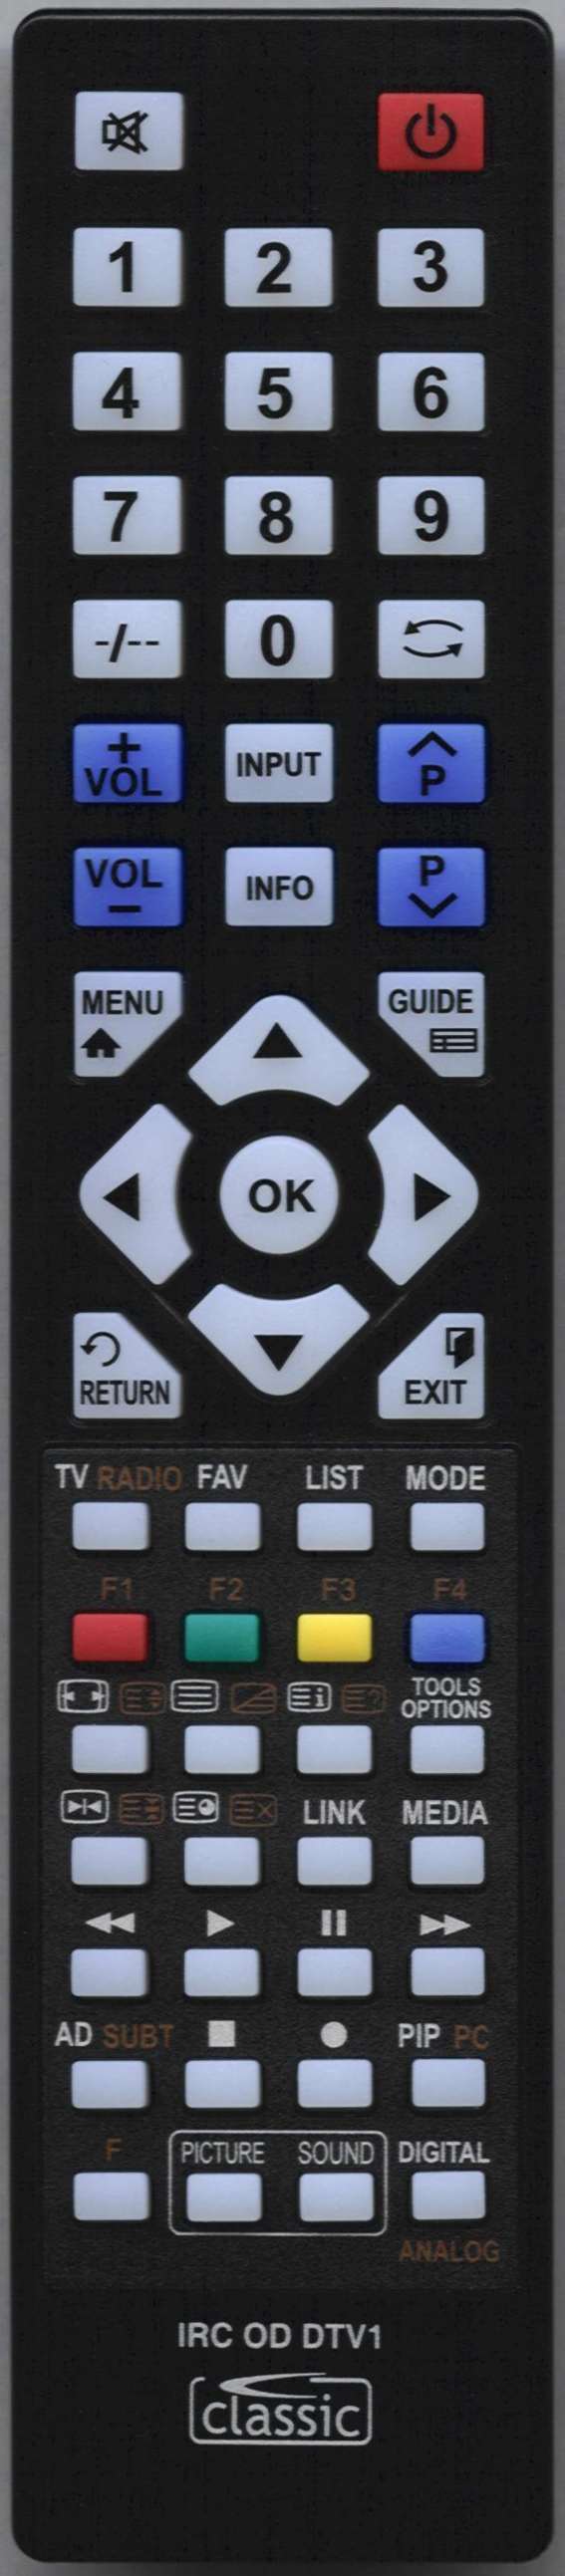 SONY KDL32V5500 Remote Control Alternative